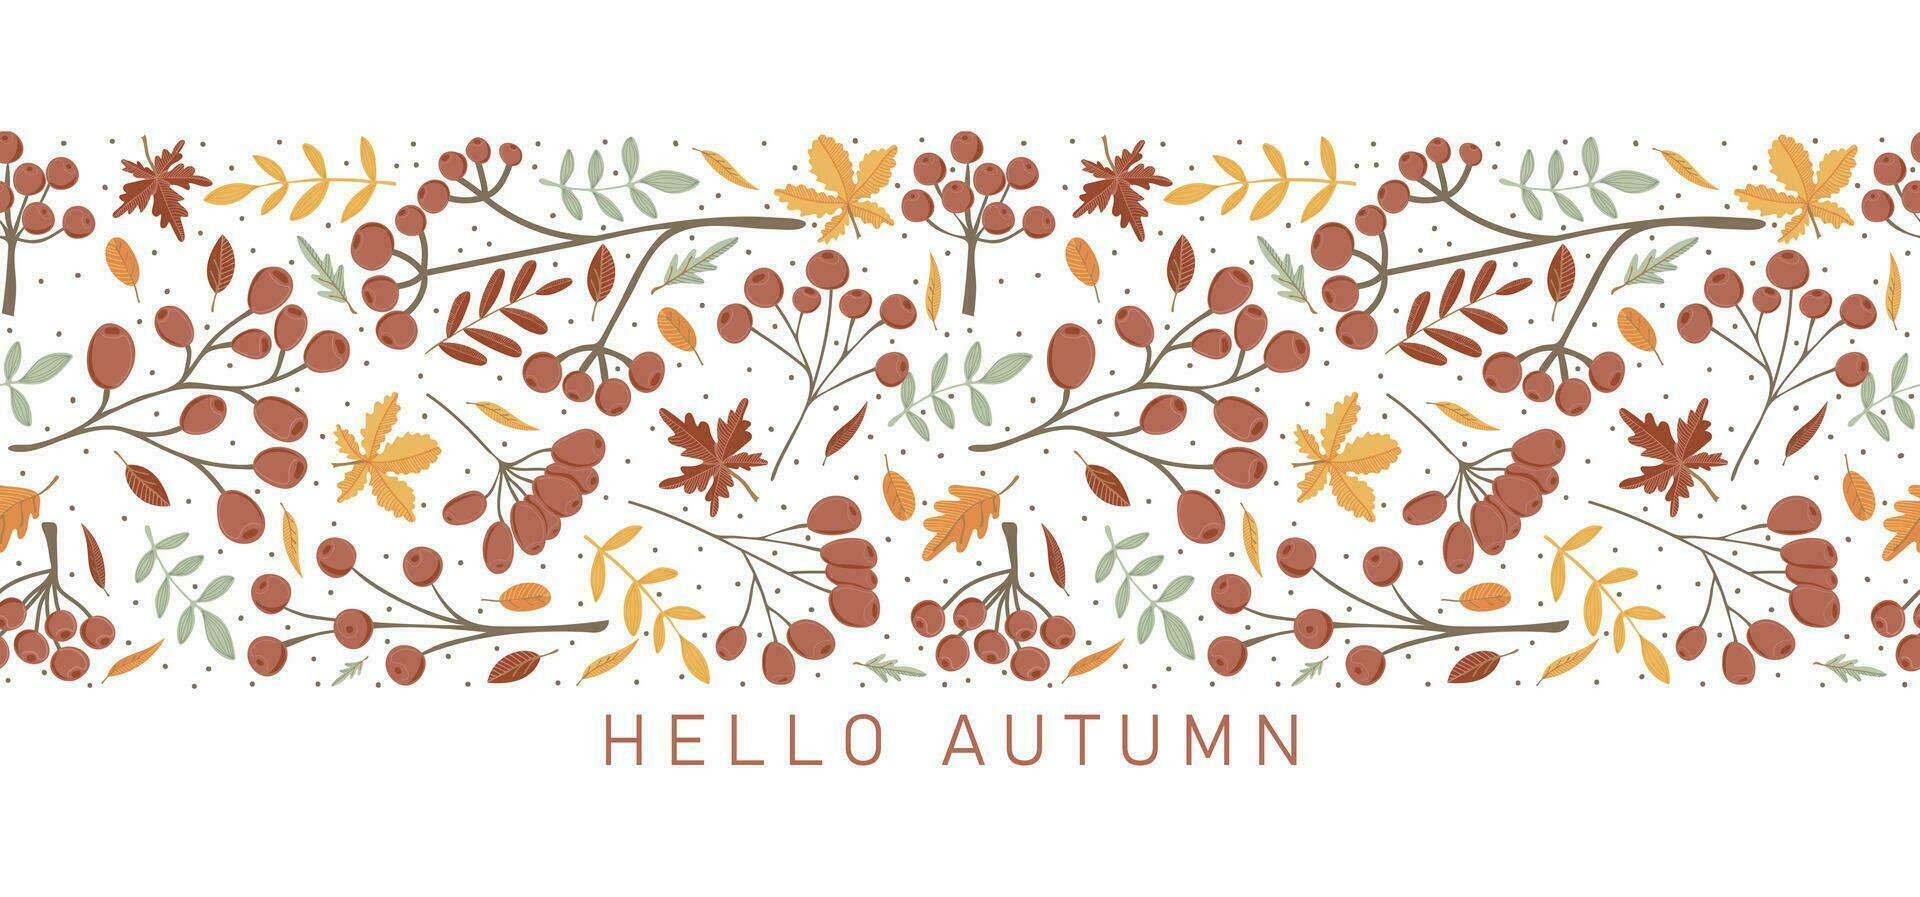 Ciao autunno. di moda design con autunno foglie, ramoscelli e frutti di bosco nel minimalista stile. Perfetto sfondo per striscione, manifesto, volantino, copertina vettore